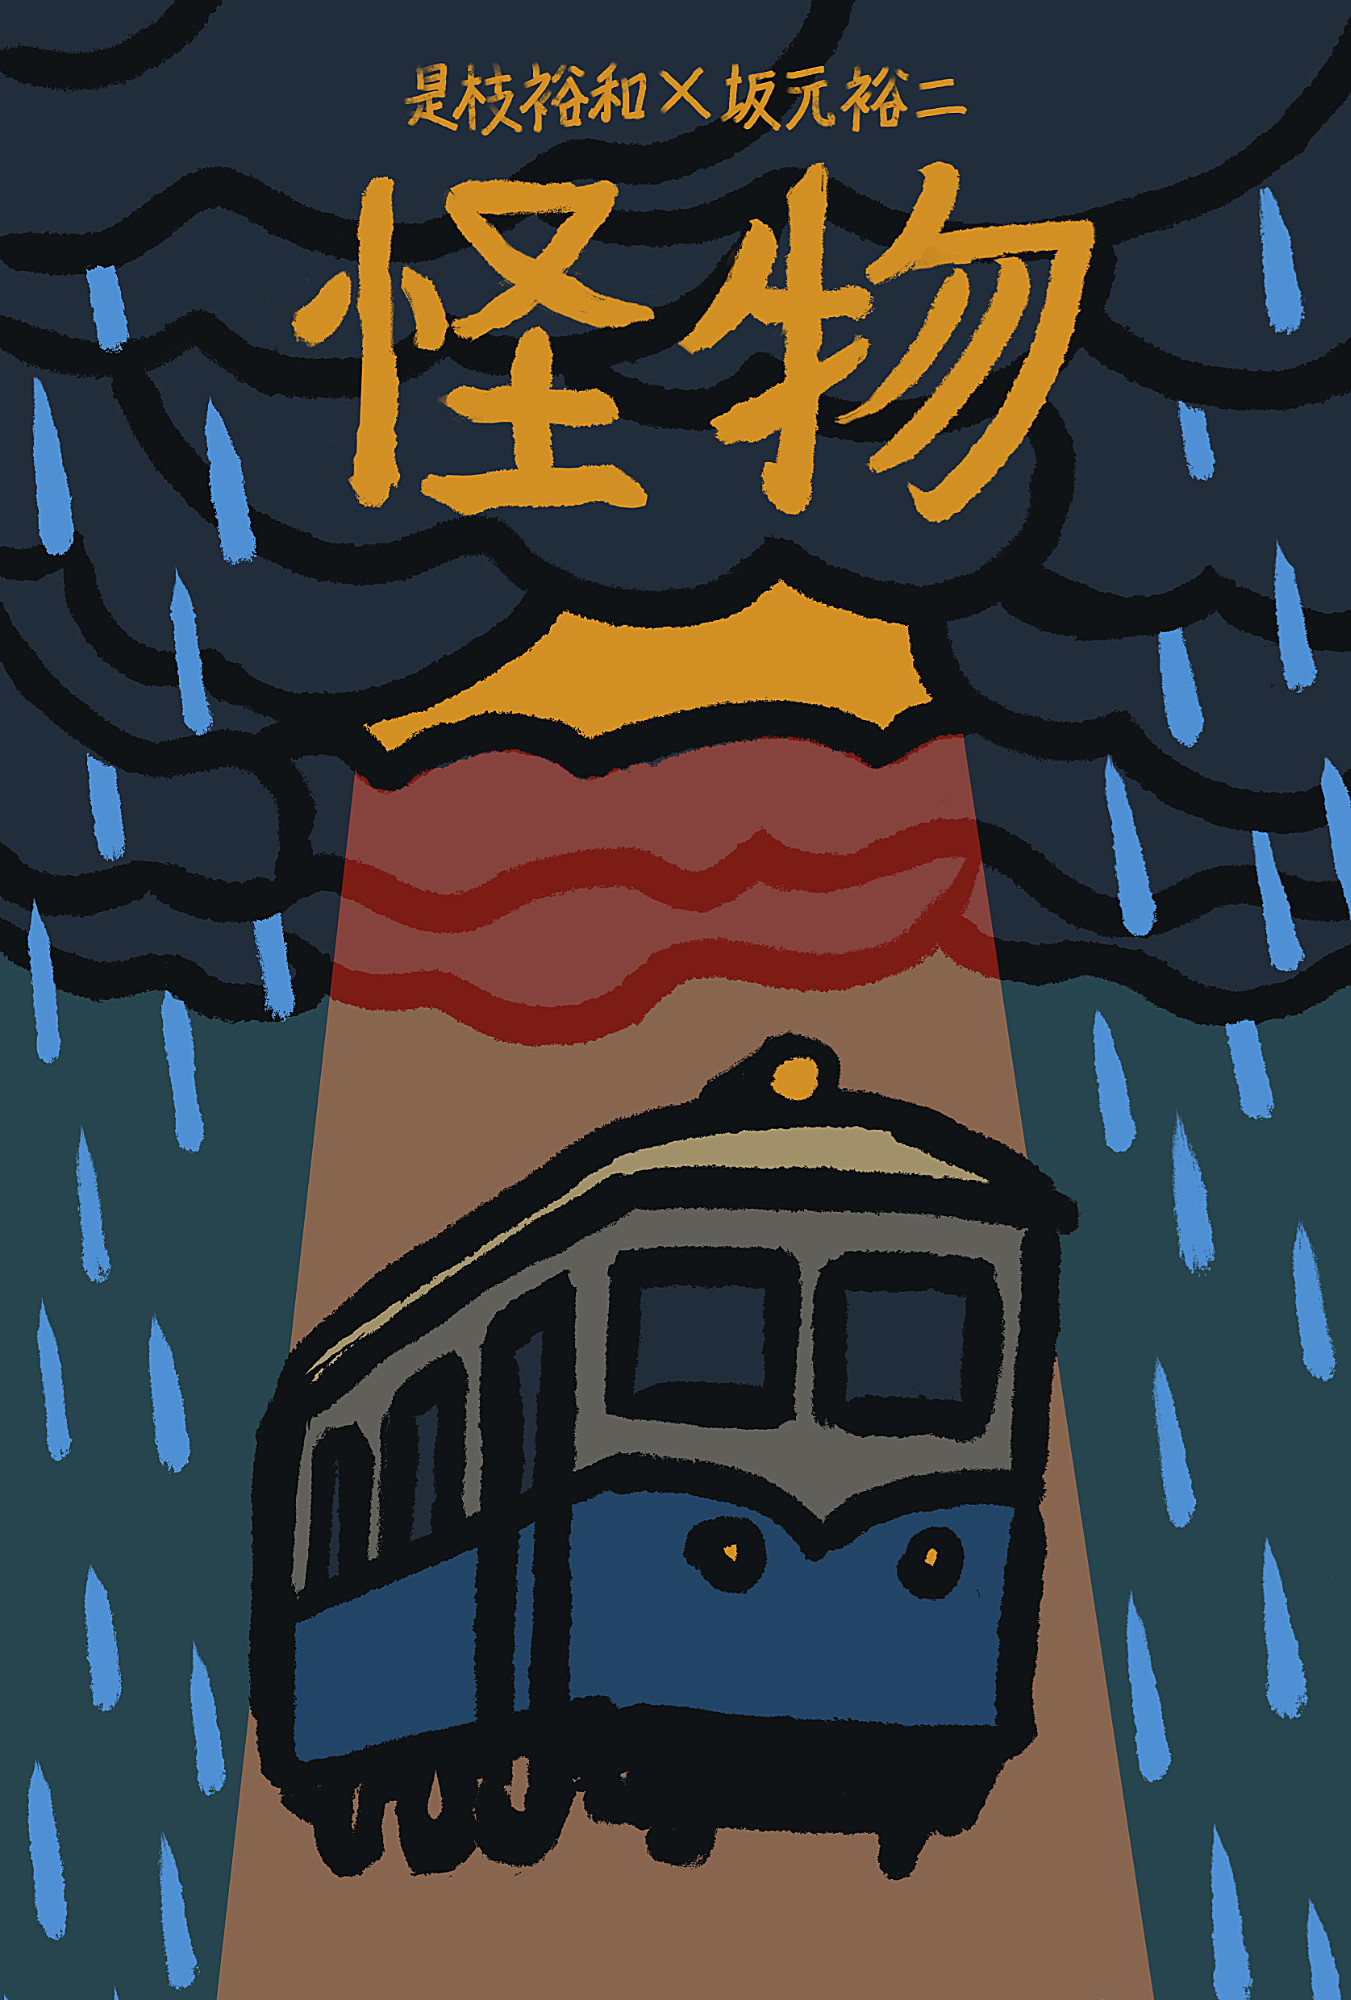 Cartaz do filme japonês Monster (2023) de Hirokazu Kore-Eda, monstrando um vagão de trem sob nuvens carregadas, que despejam gotas de chuva só ao redor dele. Uma abertura nas nuvens despeja luz sobre o vagão. O título está em japonês (怪物)